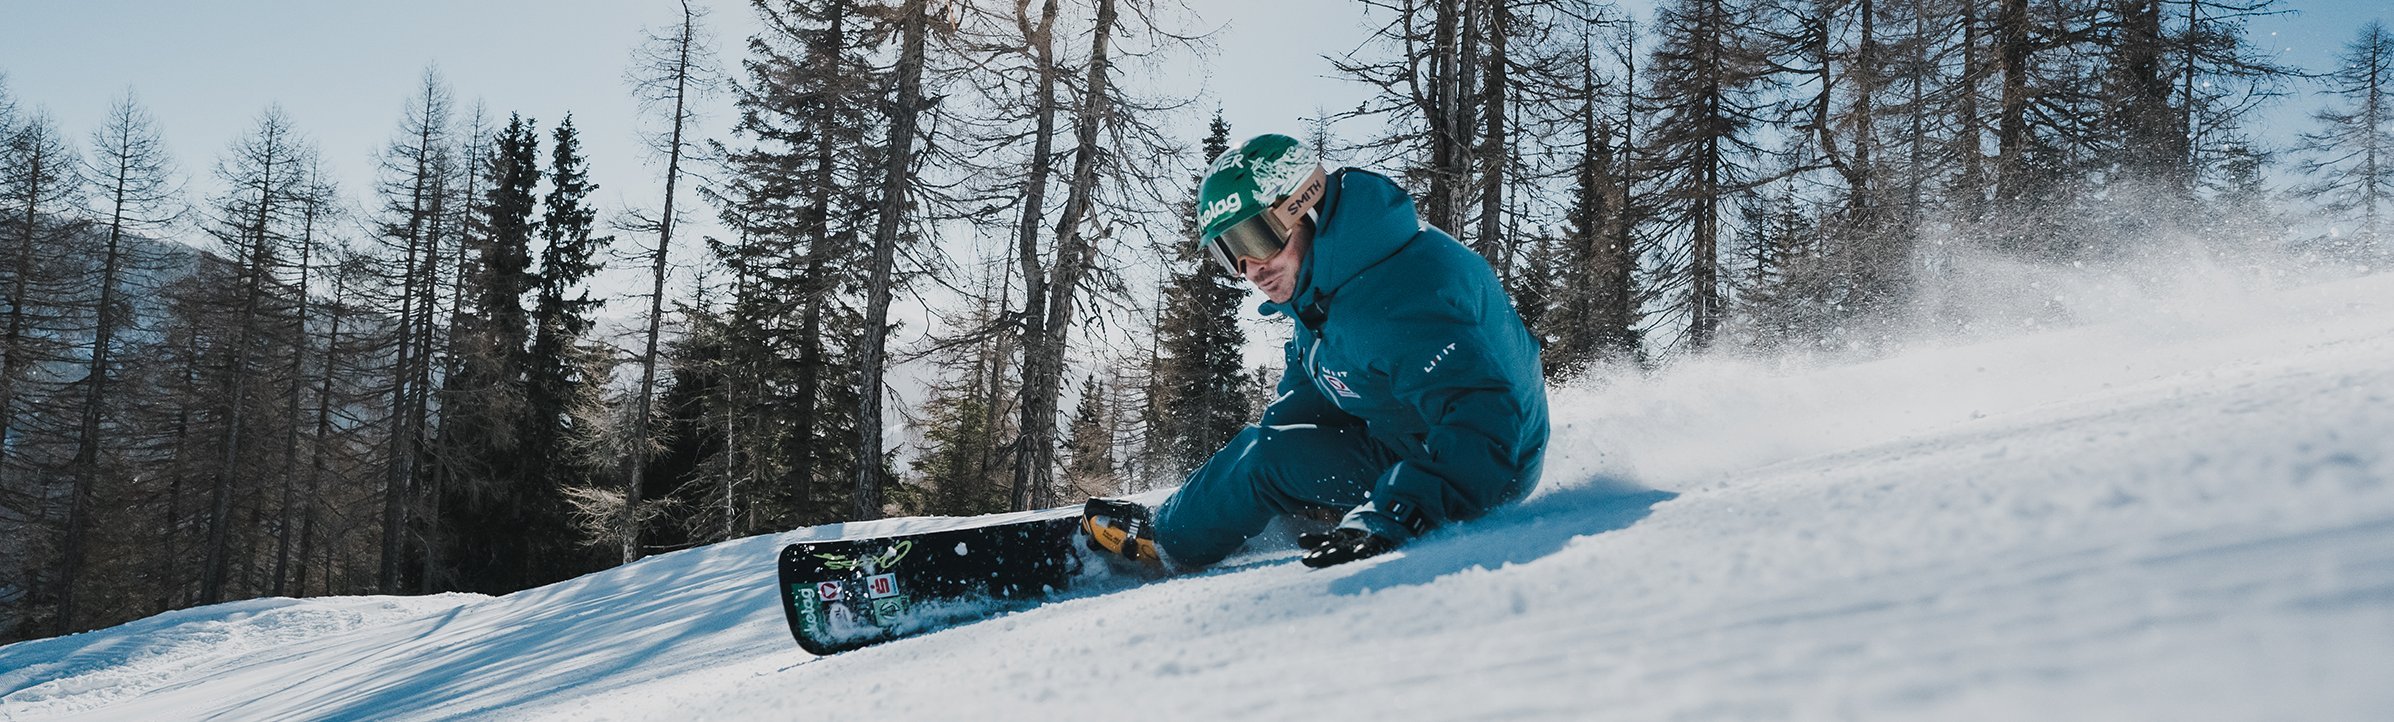 Weltcup-Snowboarder Alex Payer auf der Spitzeckabfahrt, Kärnten